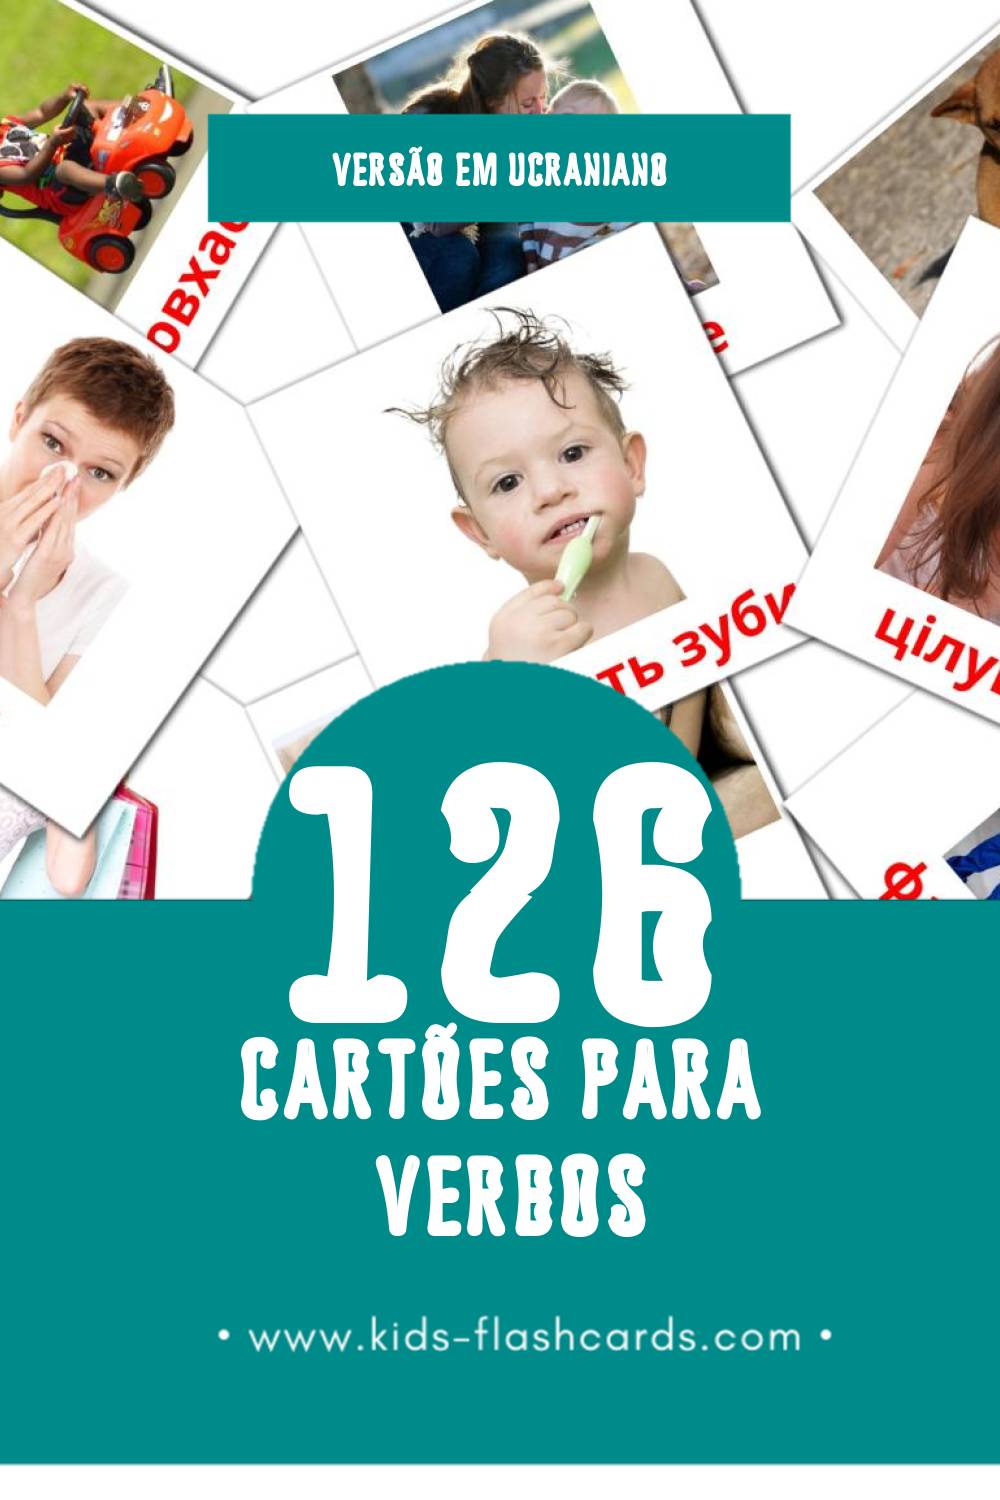 Flashcards de Дієслова  Visuais para Toddlers (126 cartões em Ucraniano)